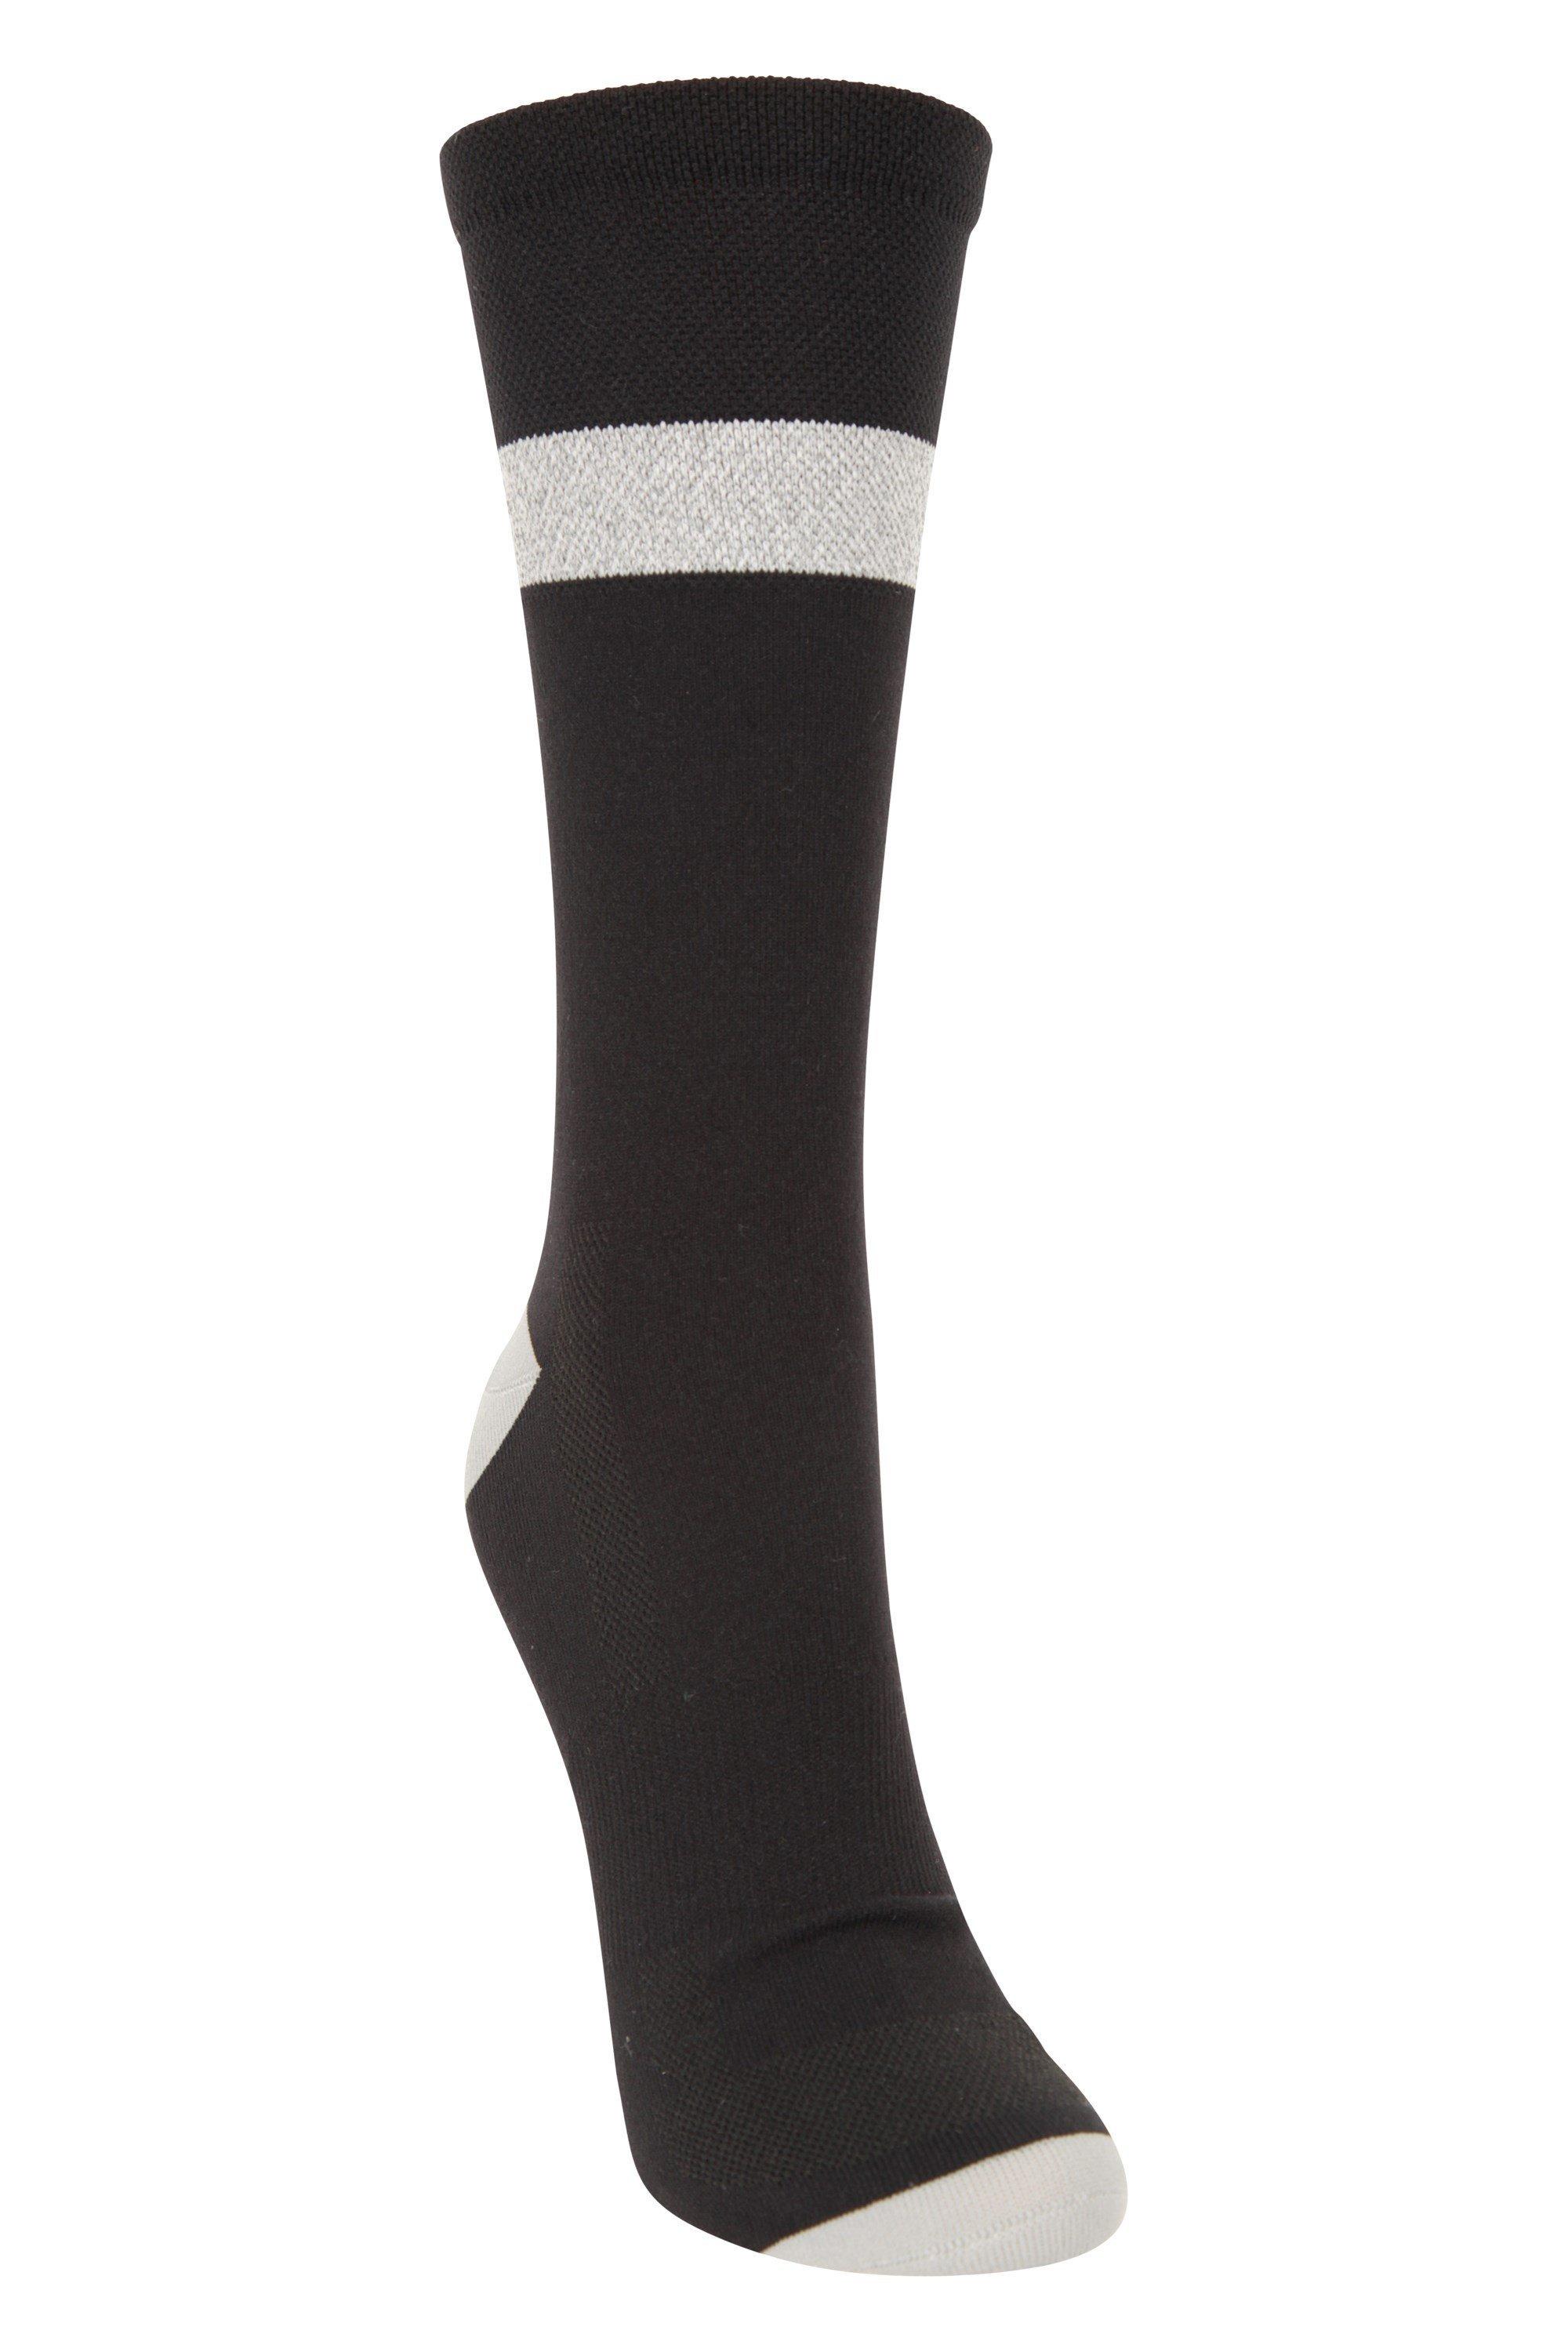 Iso-Vis  Running Socks  Reflective Nylon Sock